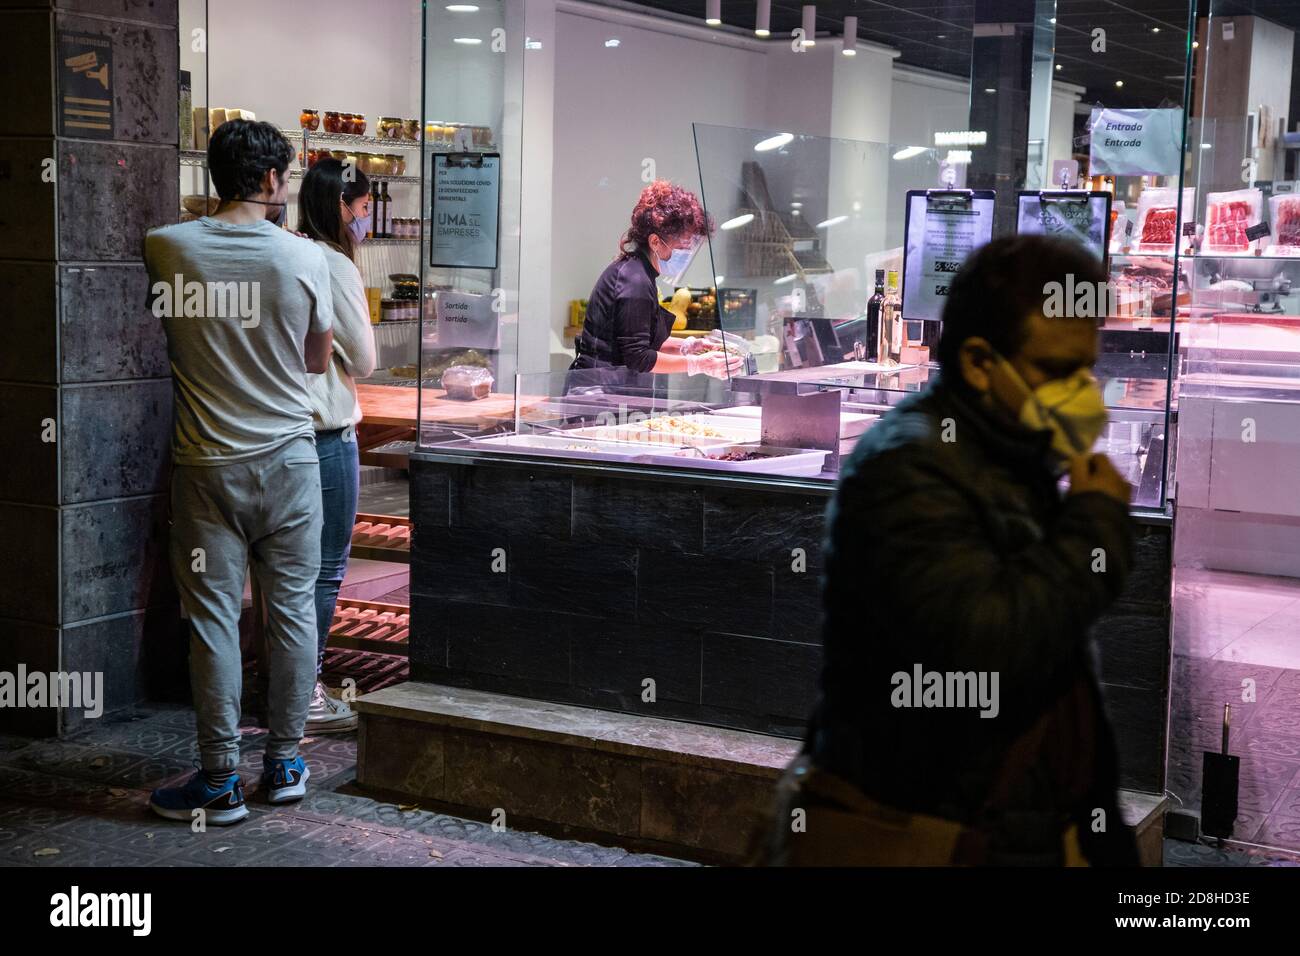 Barcelone, Espagne. 2020.10.29. Un assistant dans un magasin d'aliments à emporter sert deux clients en dehors des heures de fermeture pour les magasins selon le couvre-feu. Banque D'Images